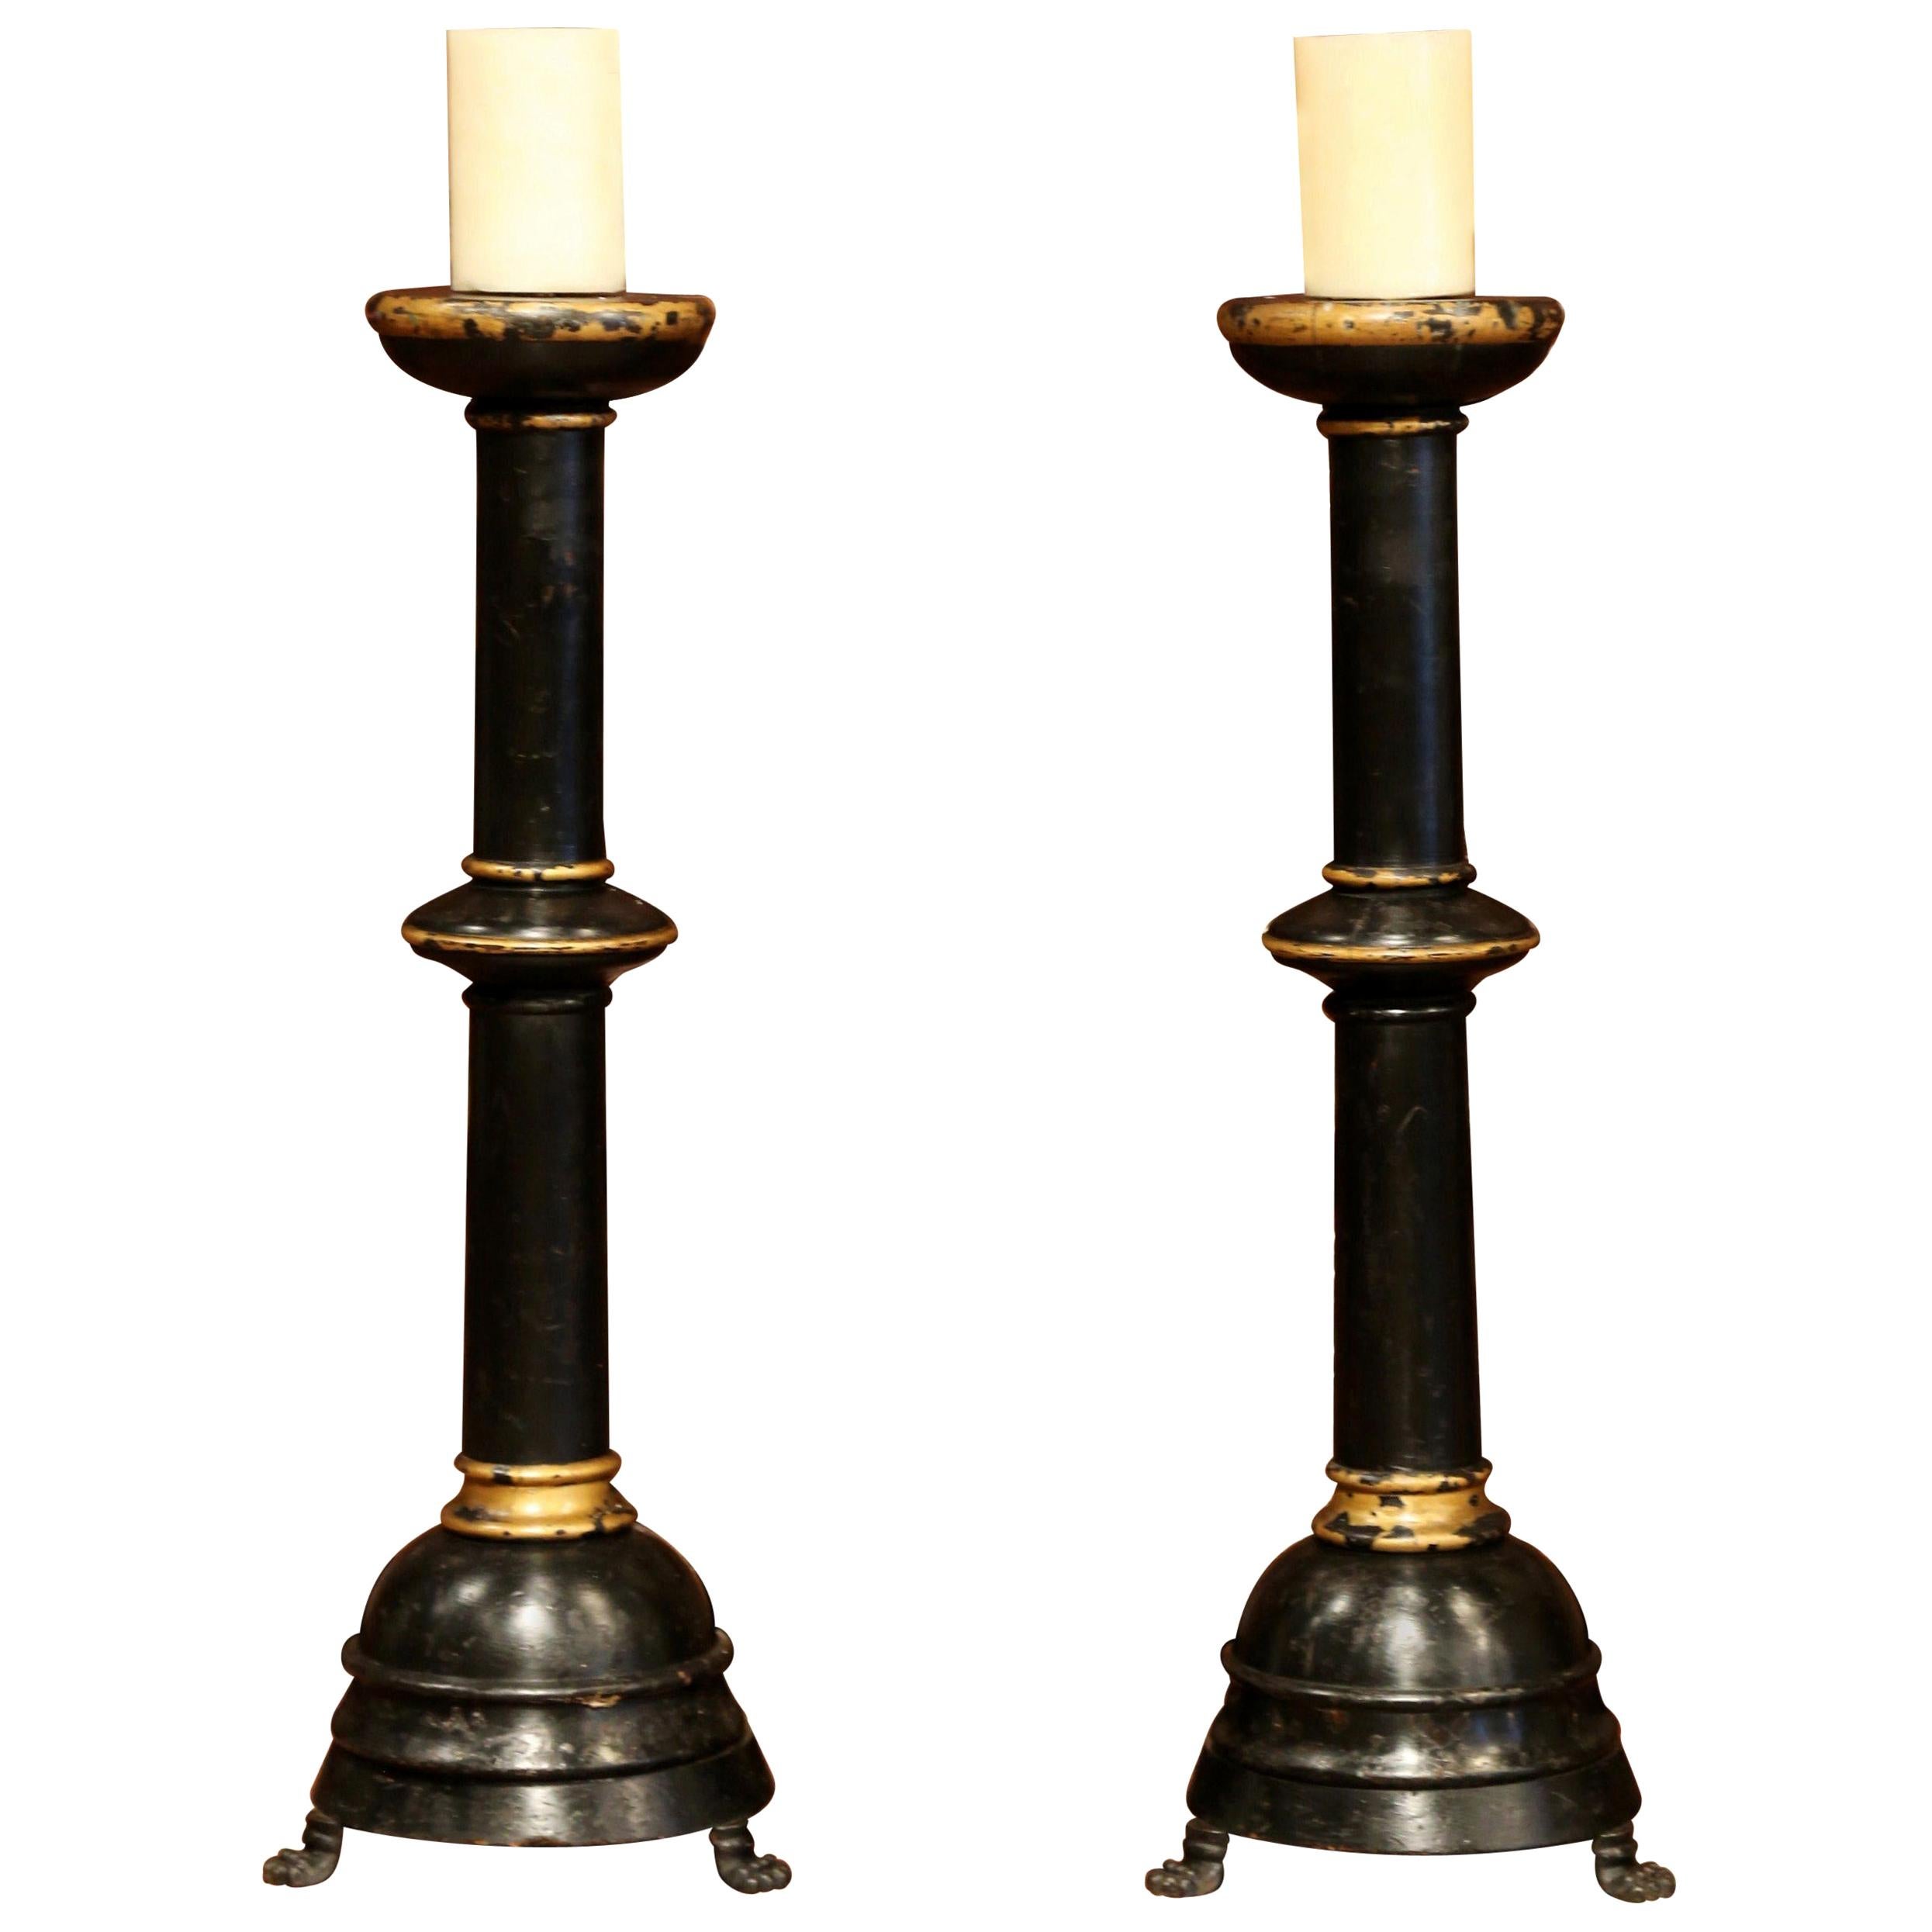 Paire de chandeliers italiens sculptés du 19ème siècle, noirci et dorés